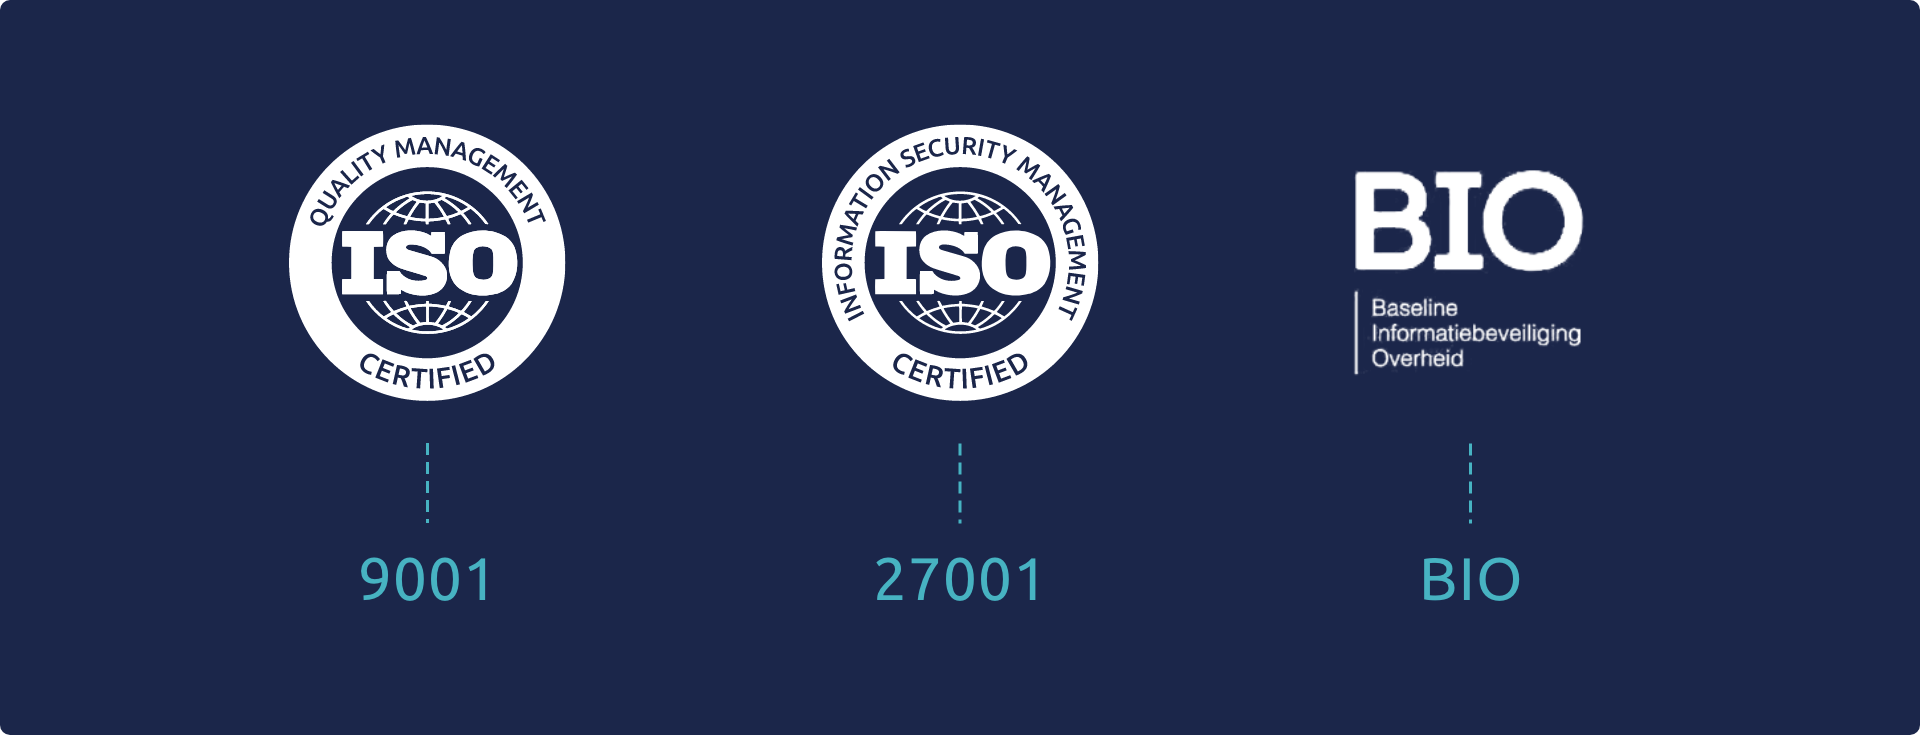 Certificaat ISO 9001 ISO 27001 en BIO